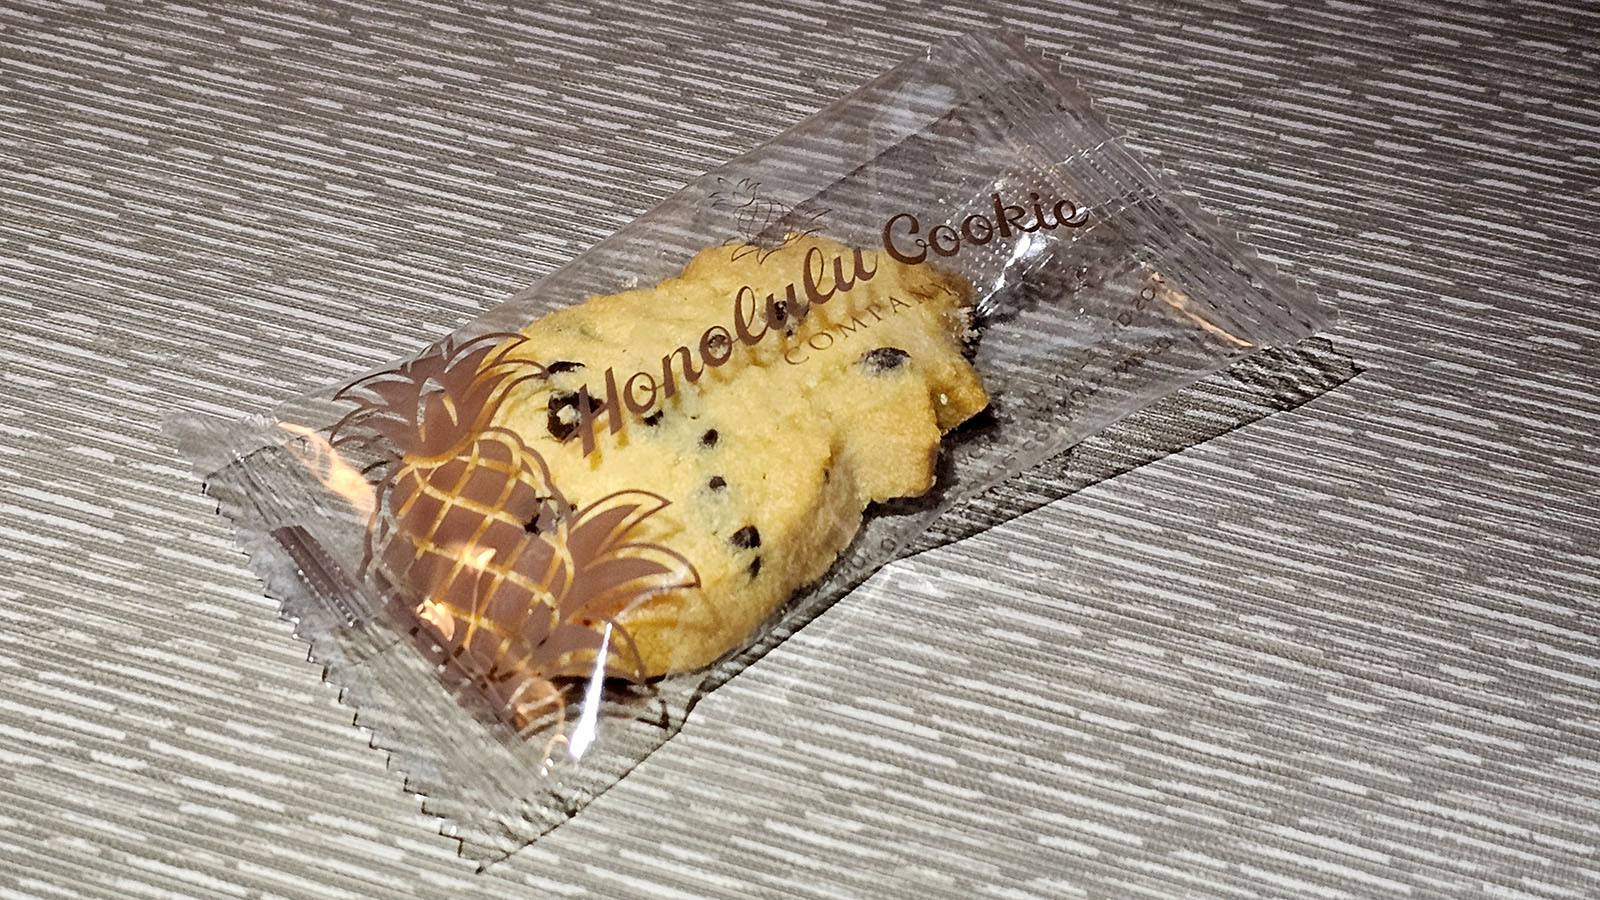 Snack in Hawaiian Airlines Leihōkū Suites